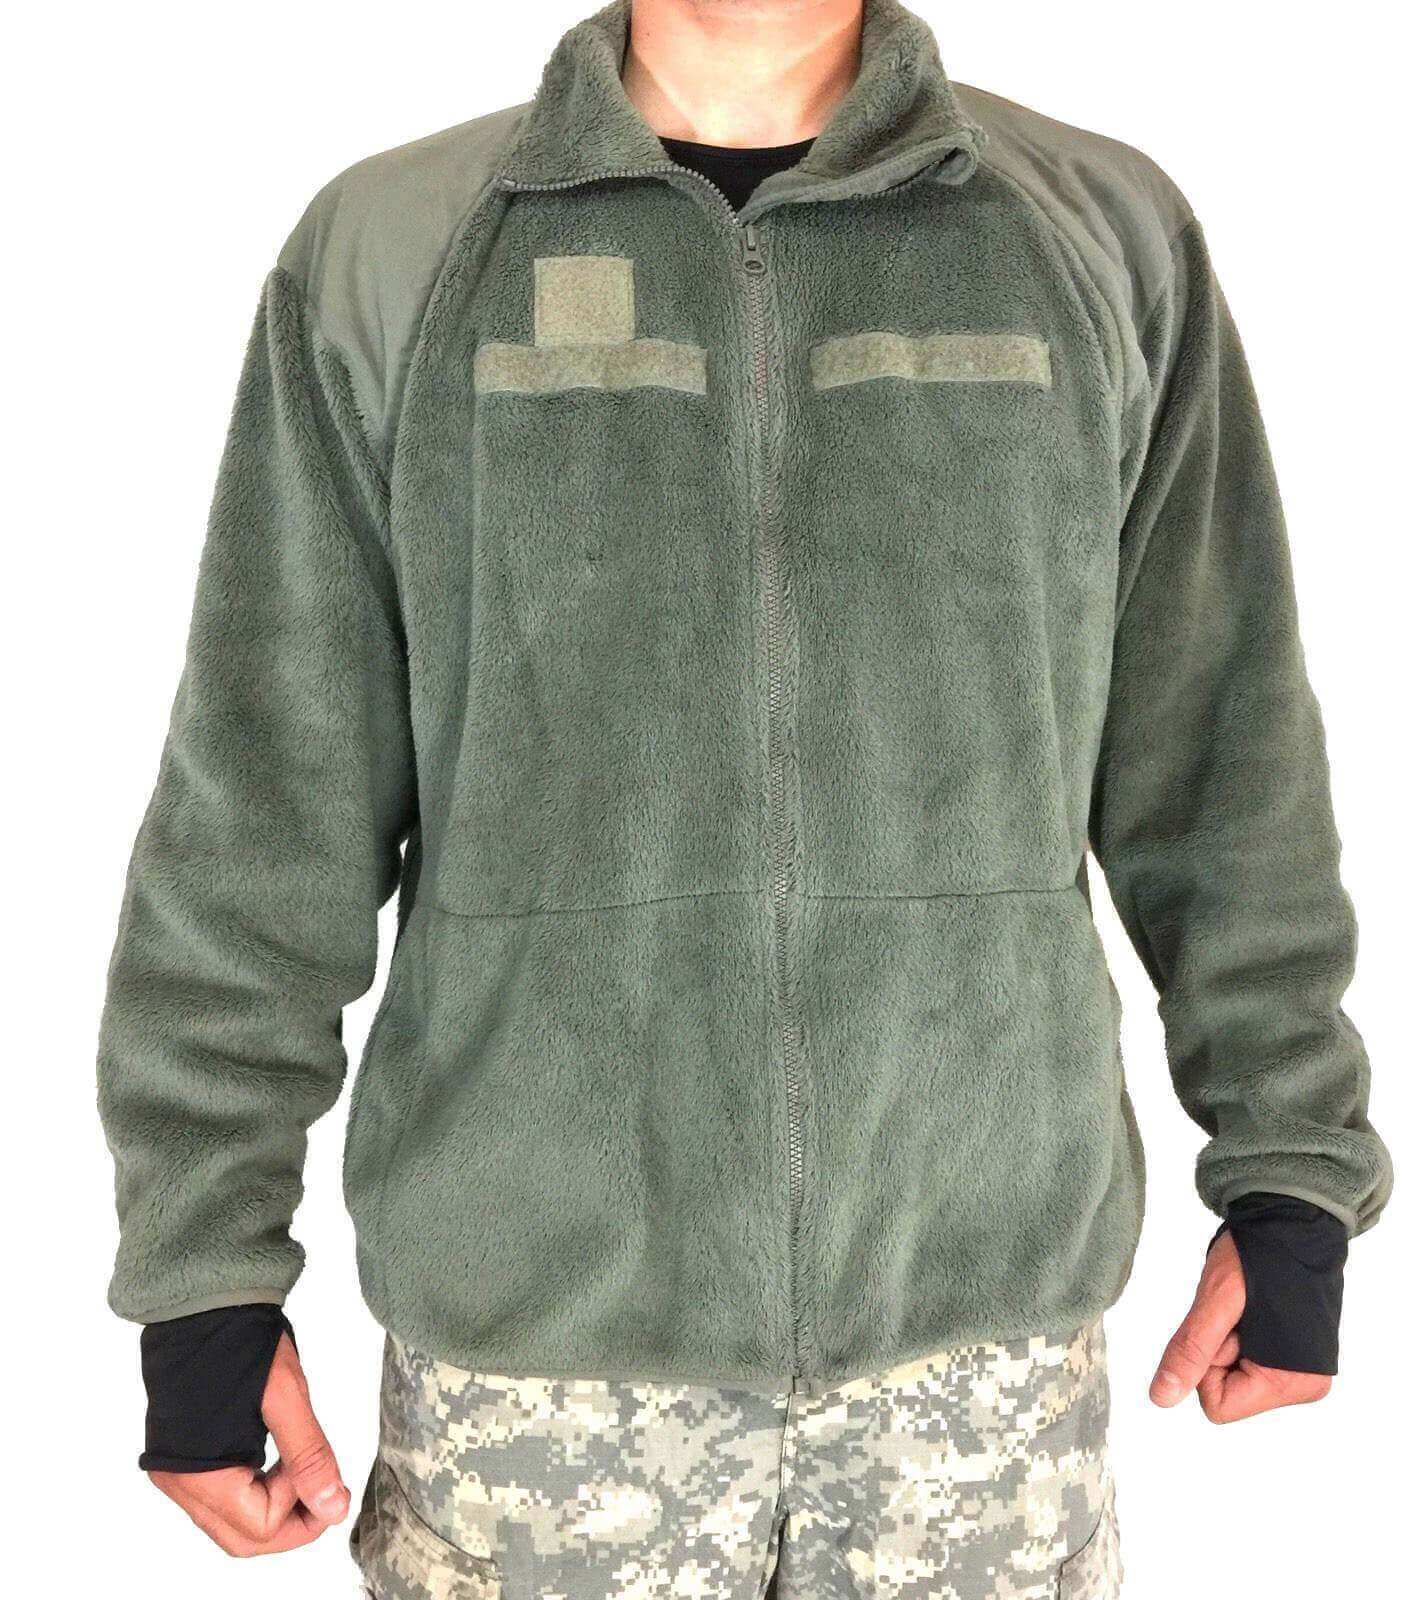 US Army Jacke ECWCS GEN III Polartec Fleece Jacke Jacket Cold Weather Large Long 